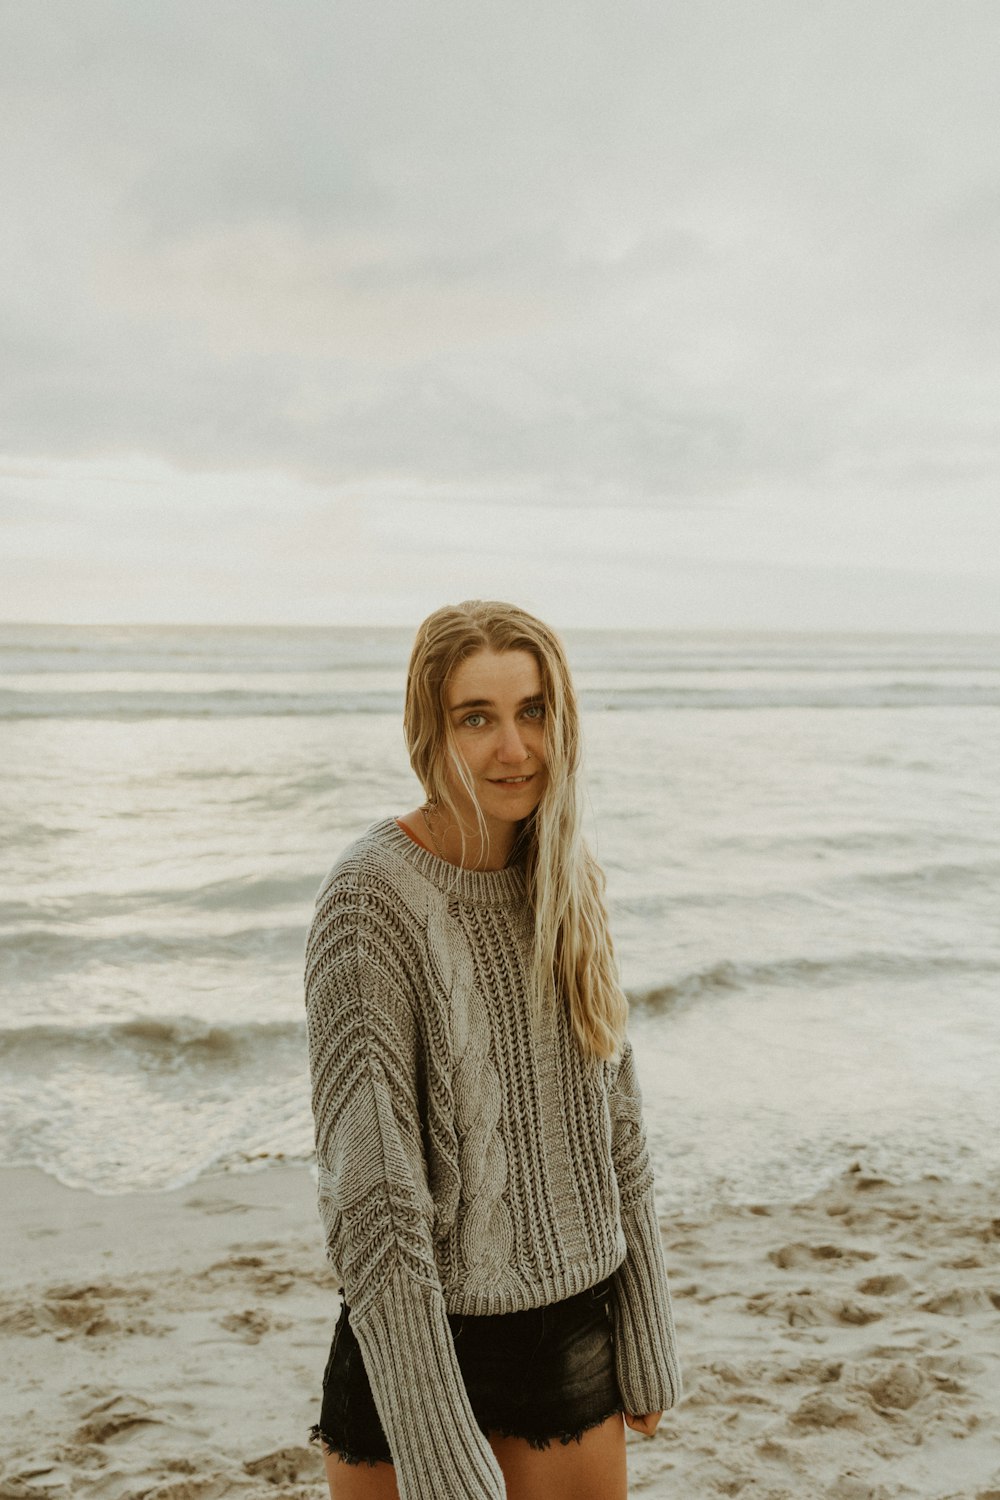 낮 동안 해변에 서 있는 흰색 니트 스웨터를 입은 여자